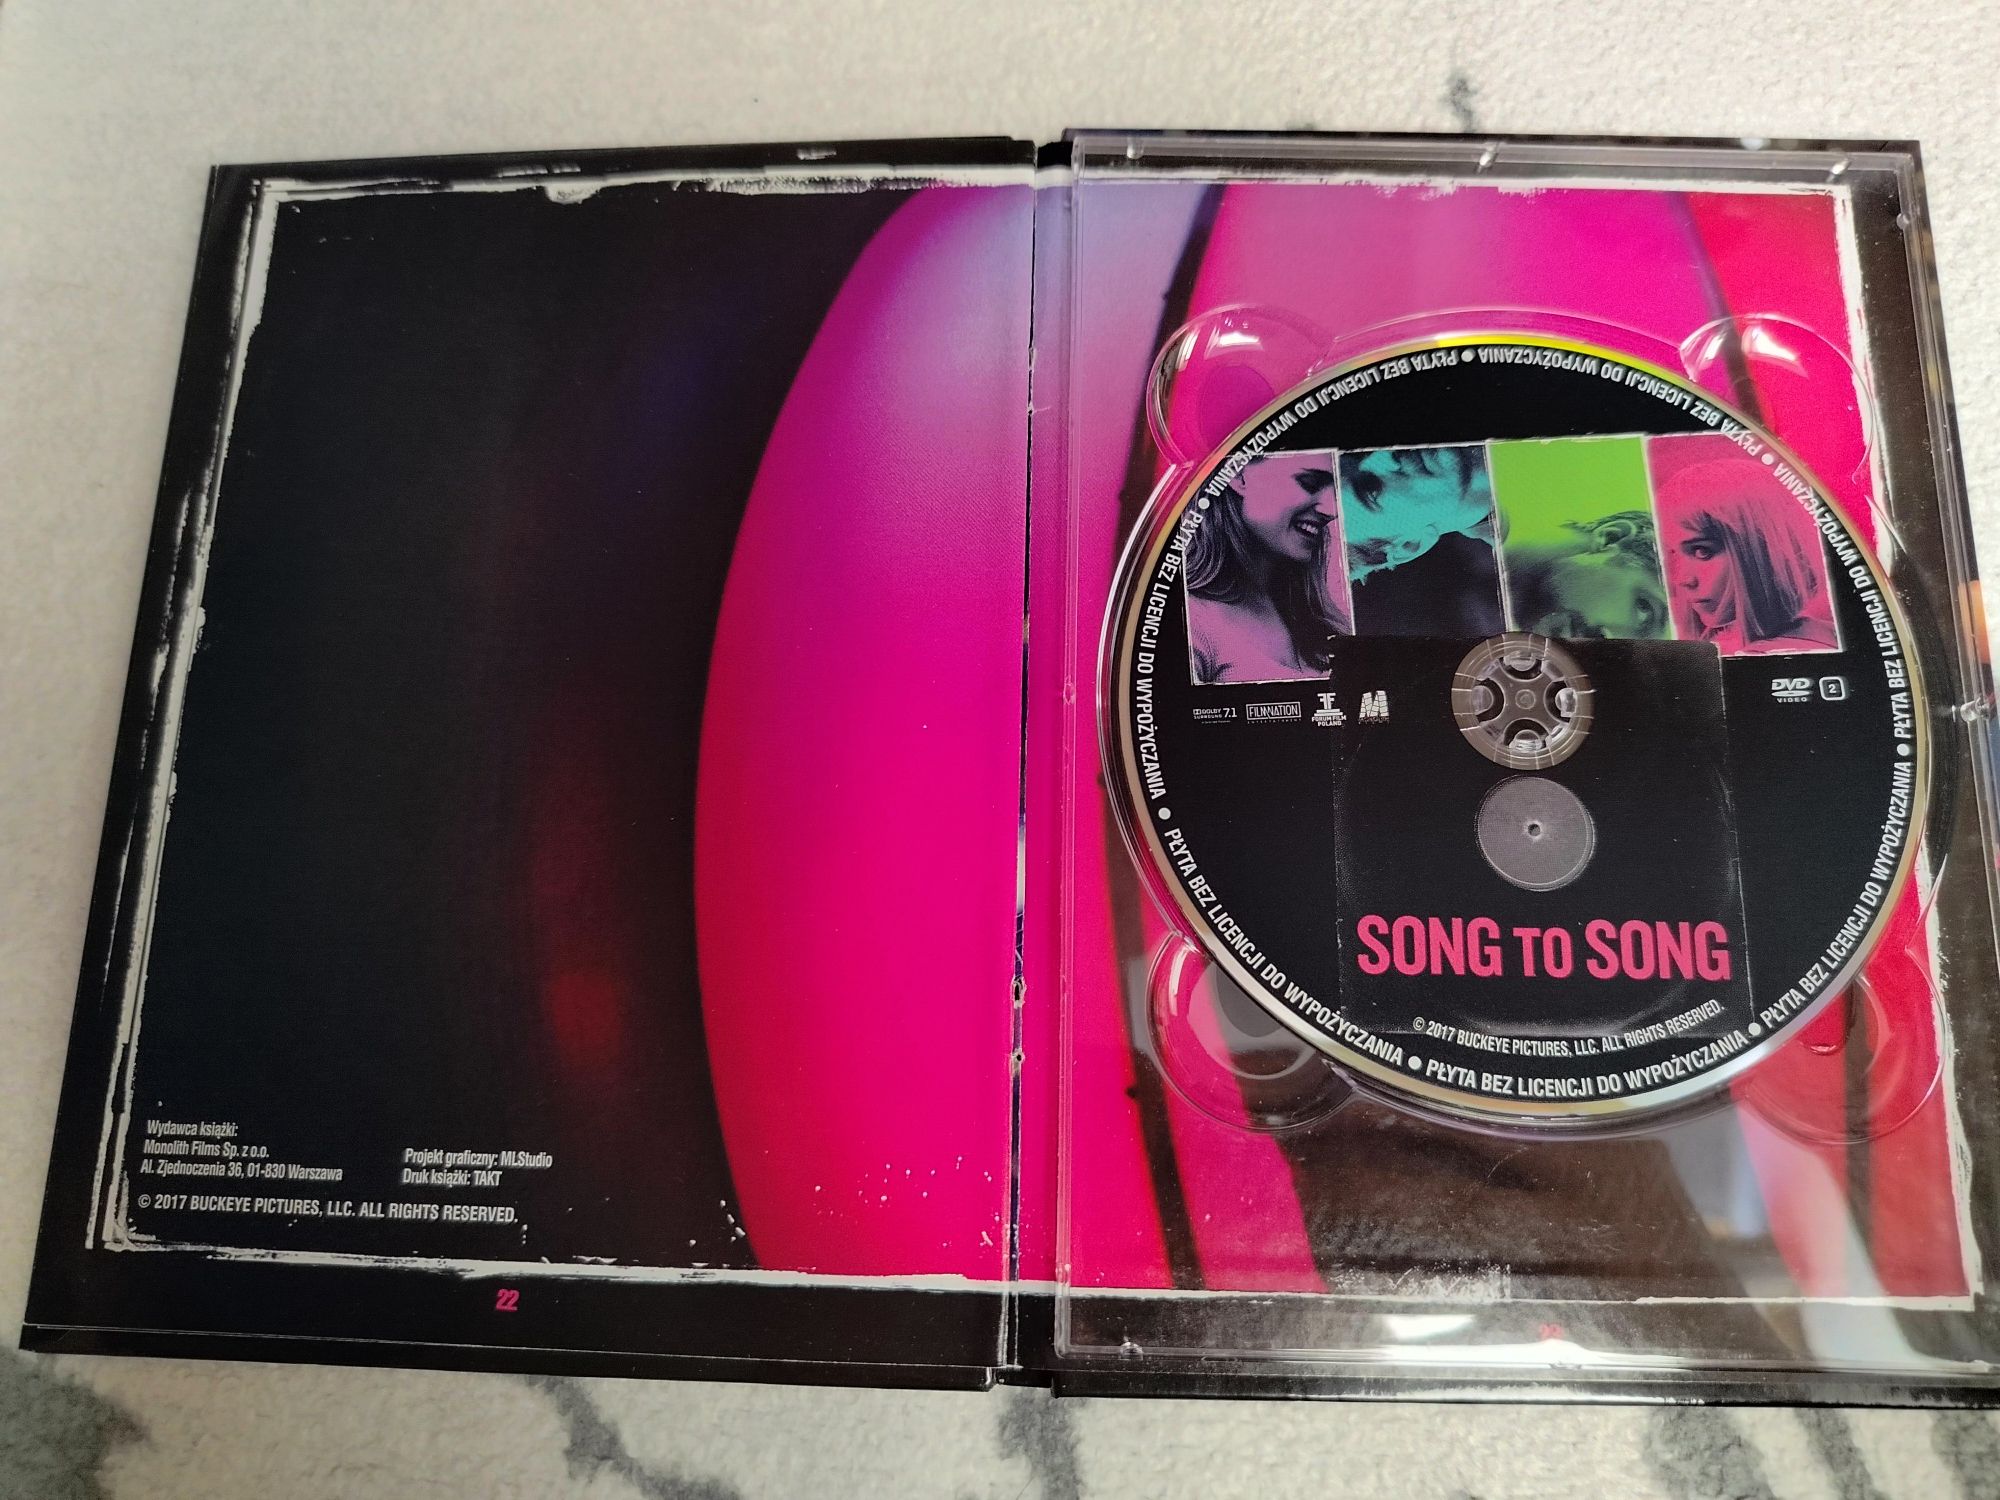 Song to song - płyta DVD